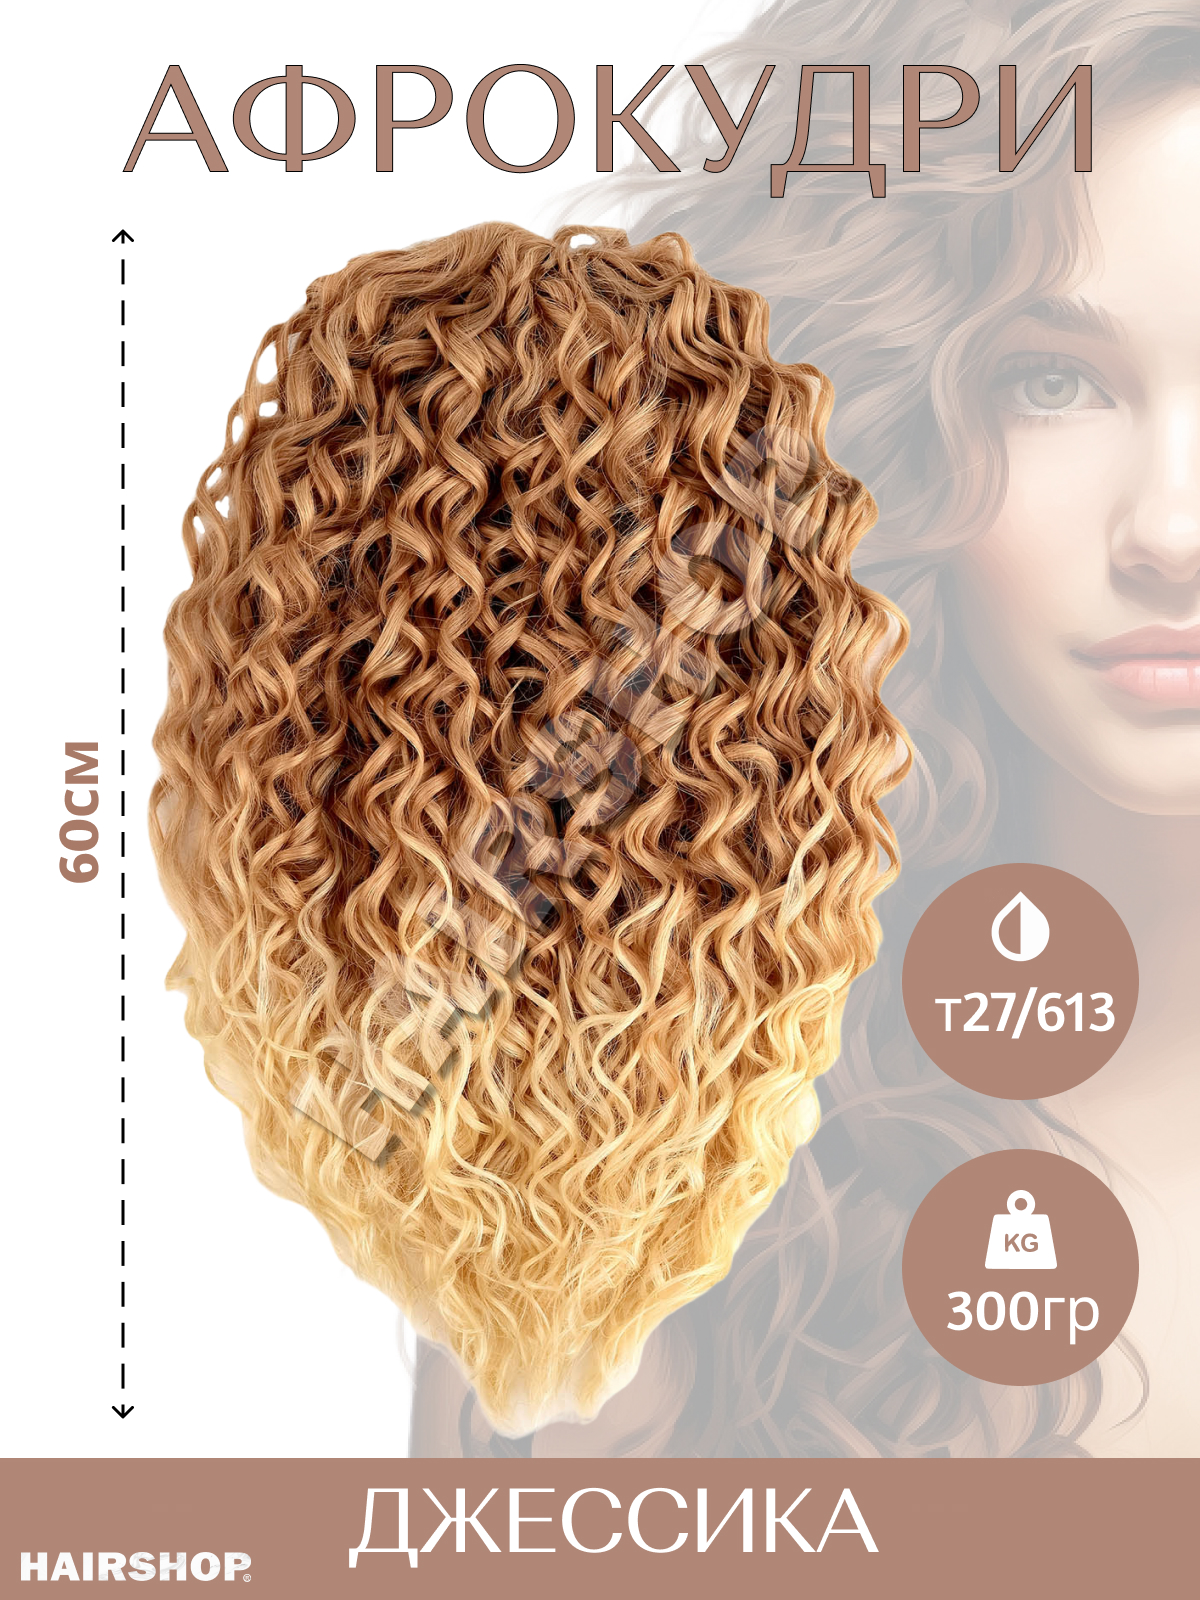 Волосы для наращивания HAIRSHOP Джессика T27/613 коричнево-рыжий с переходом в блонд 60см джессика джонс пурпурная дочь